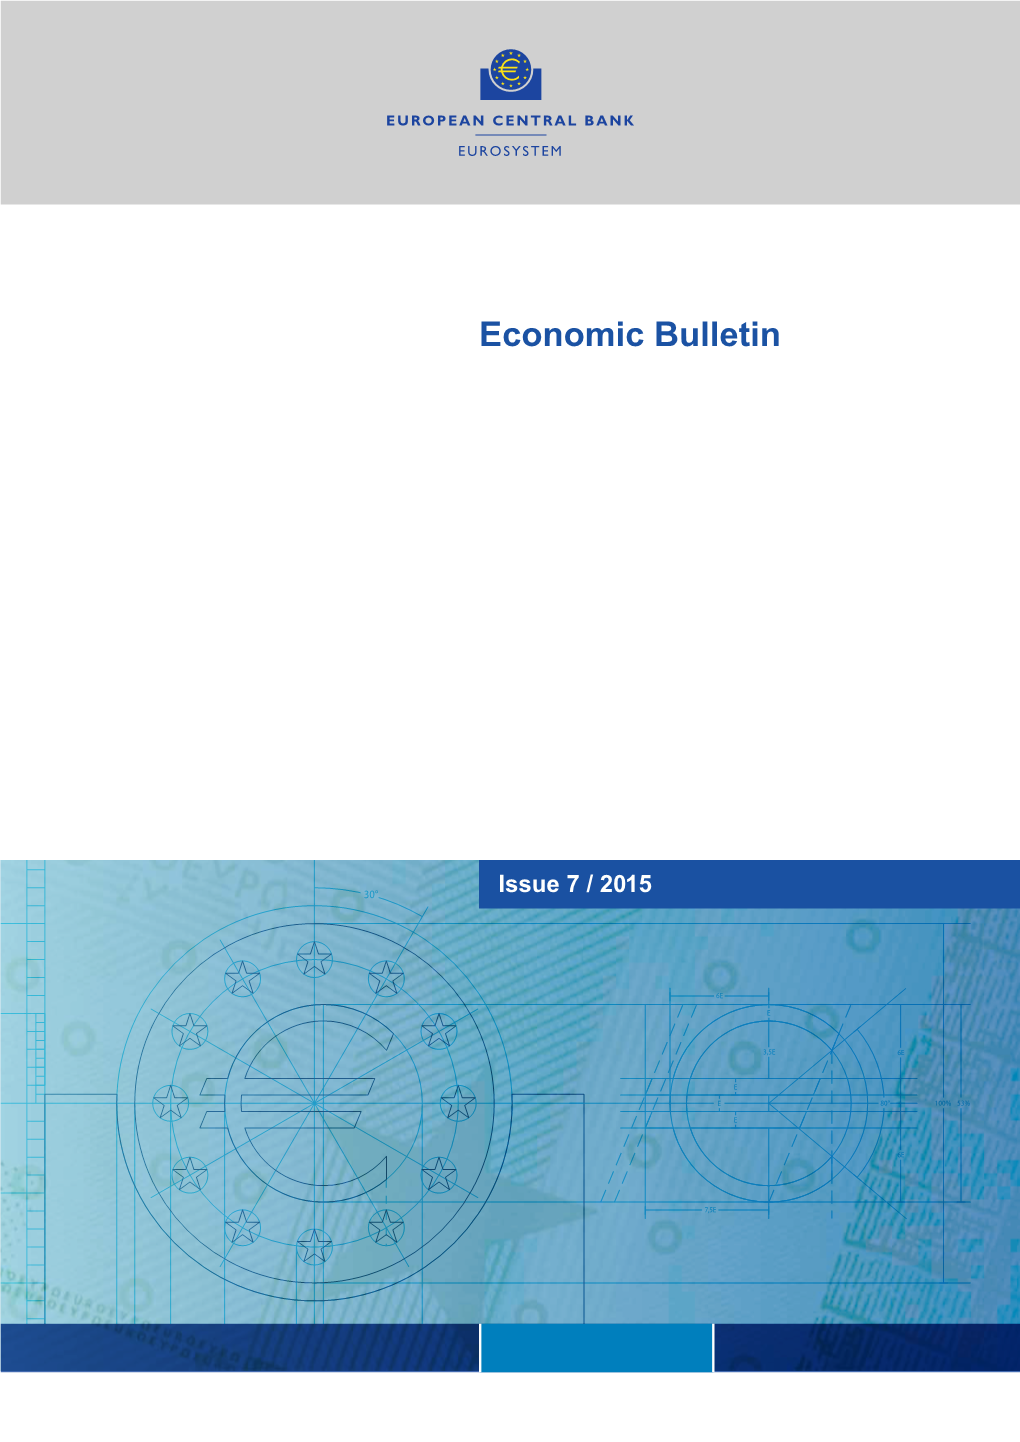 ECB Economic Bulletin, No. 7